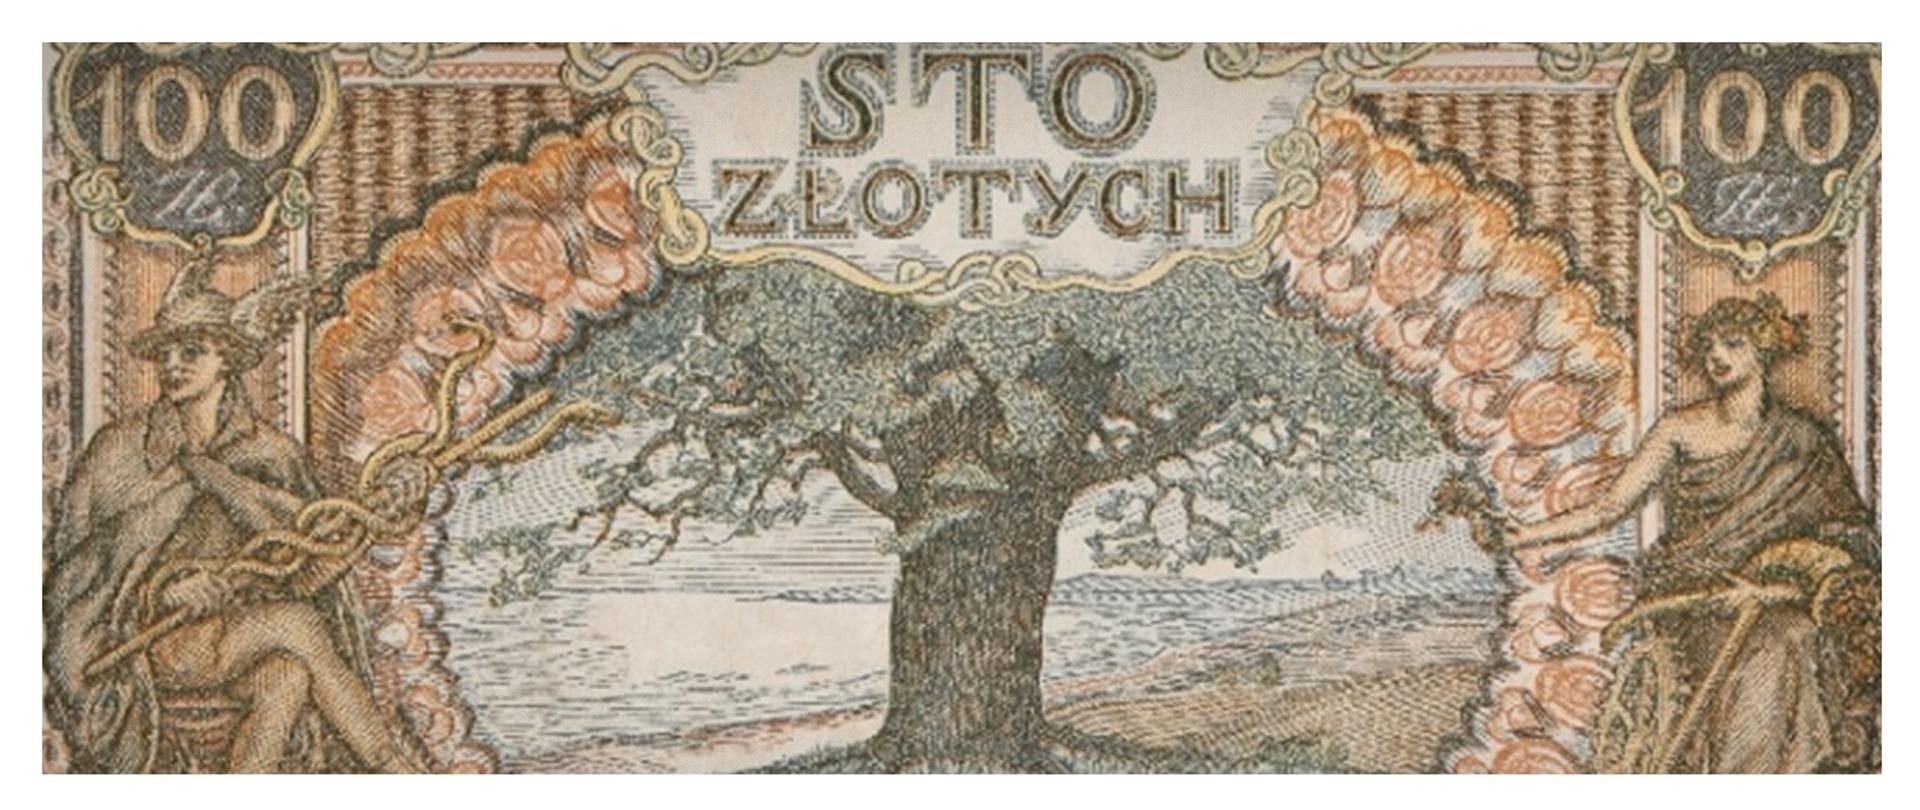 archiwalny banknot 100 złotowy z ilustracją drzewa